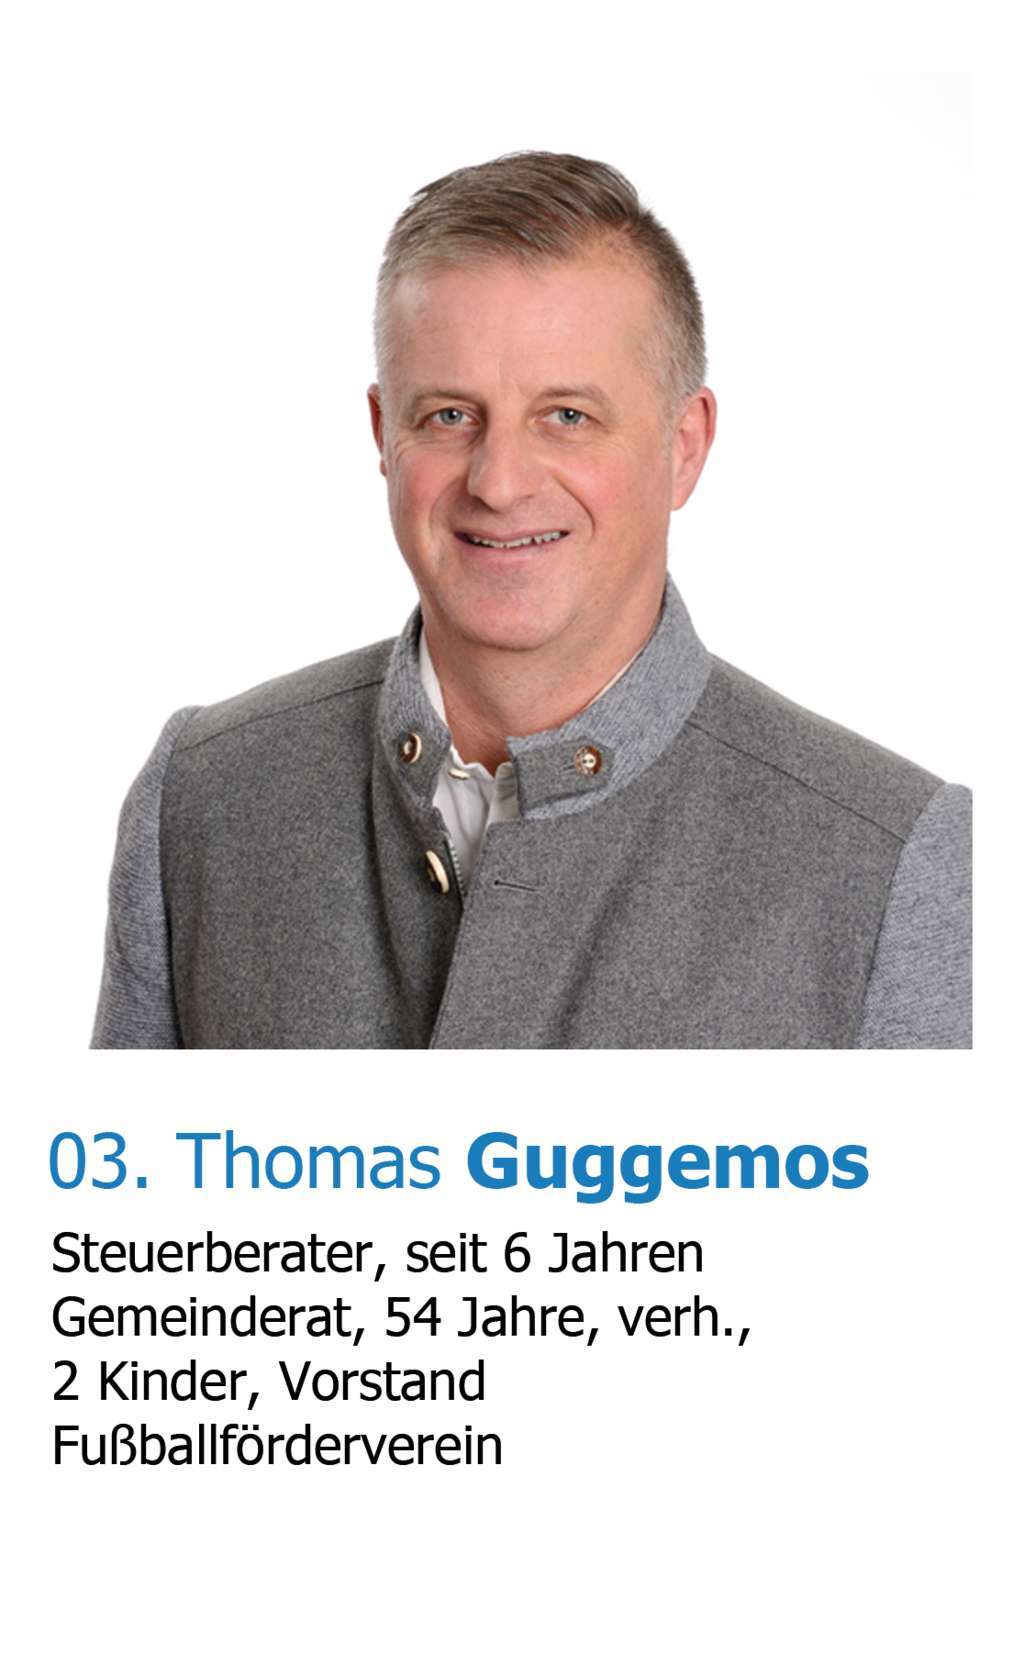 Thomas Guggemos